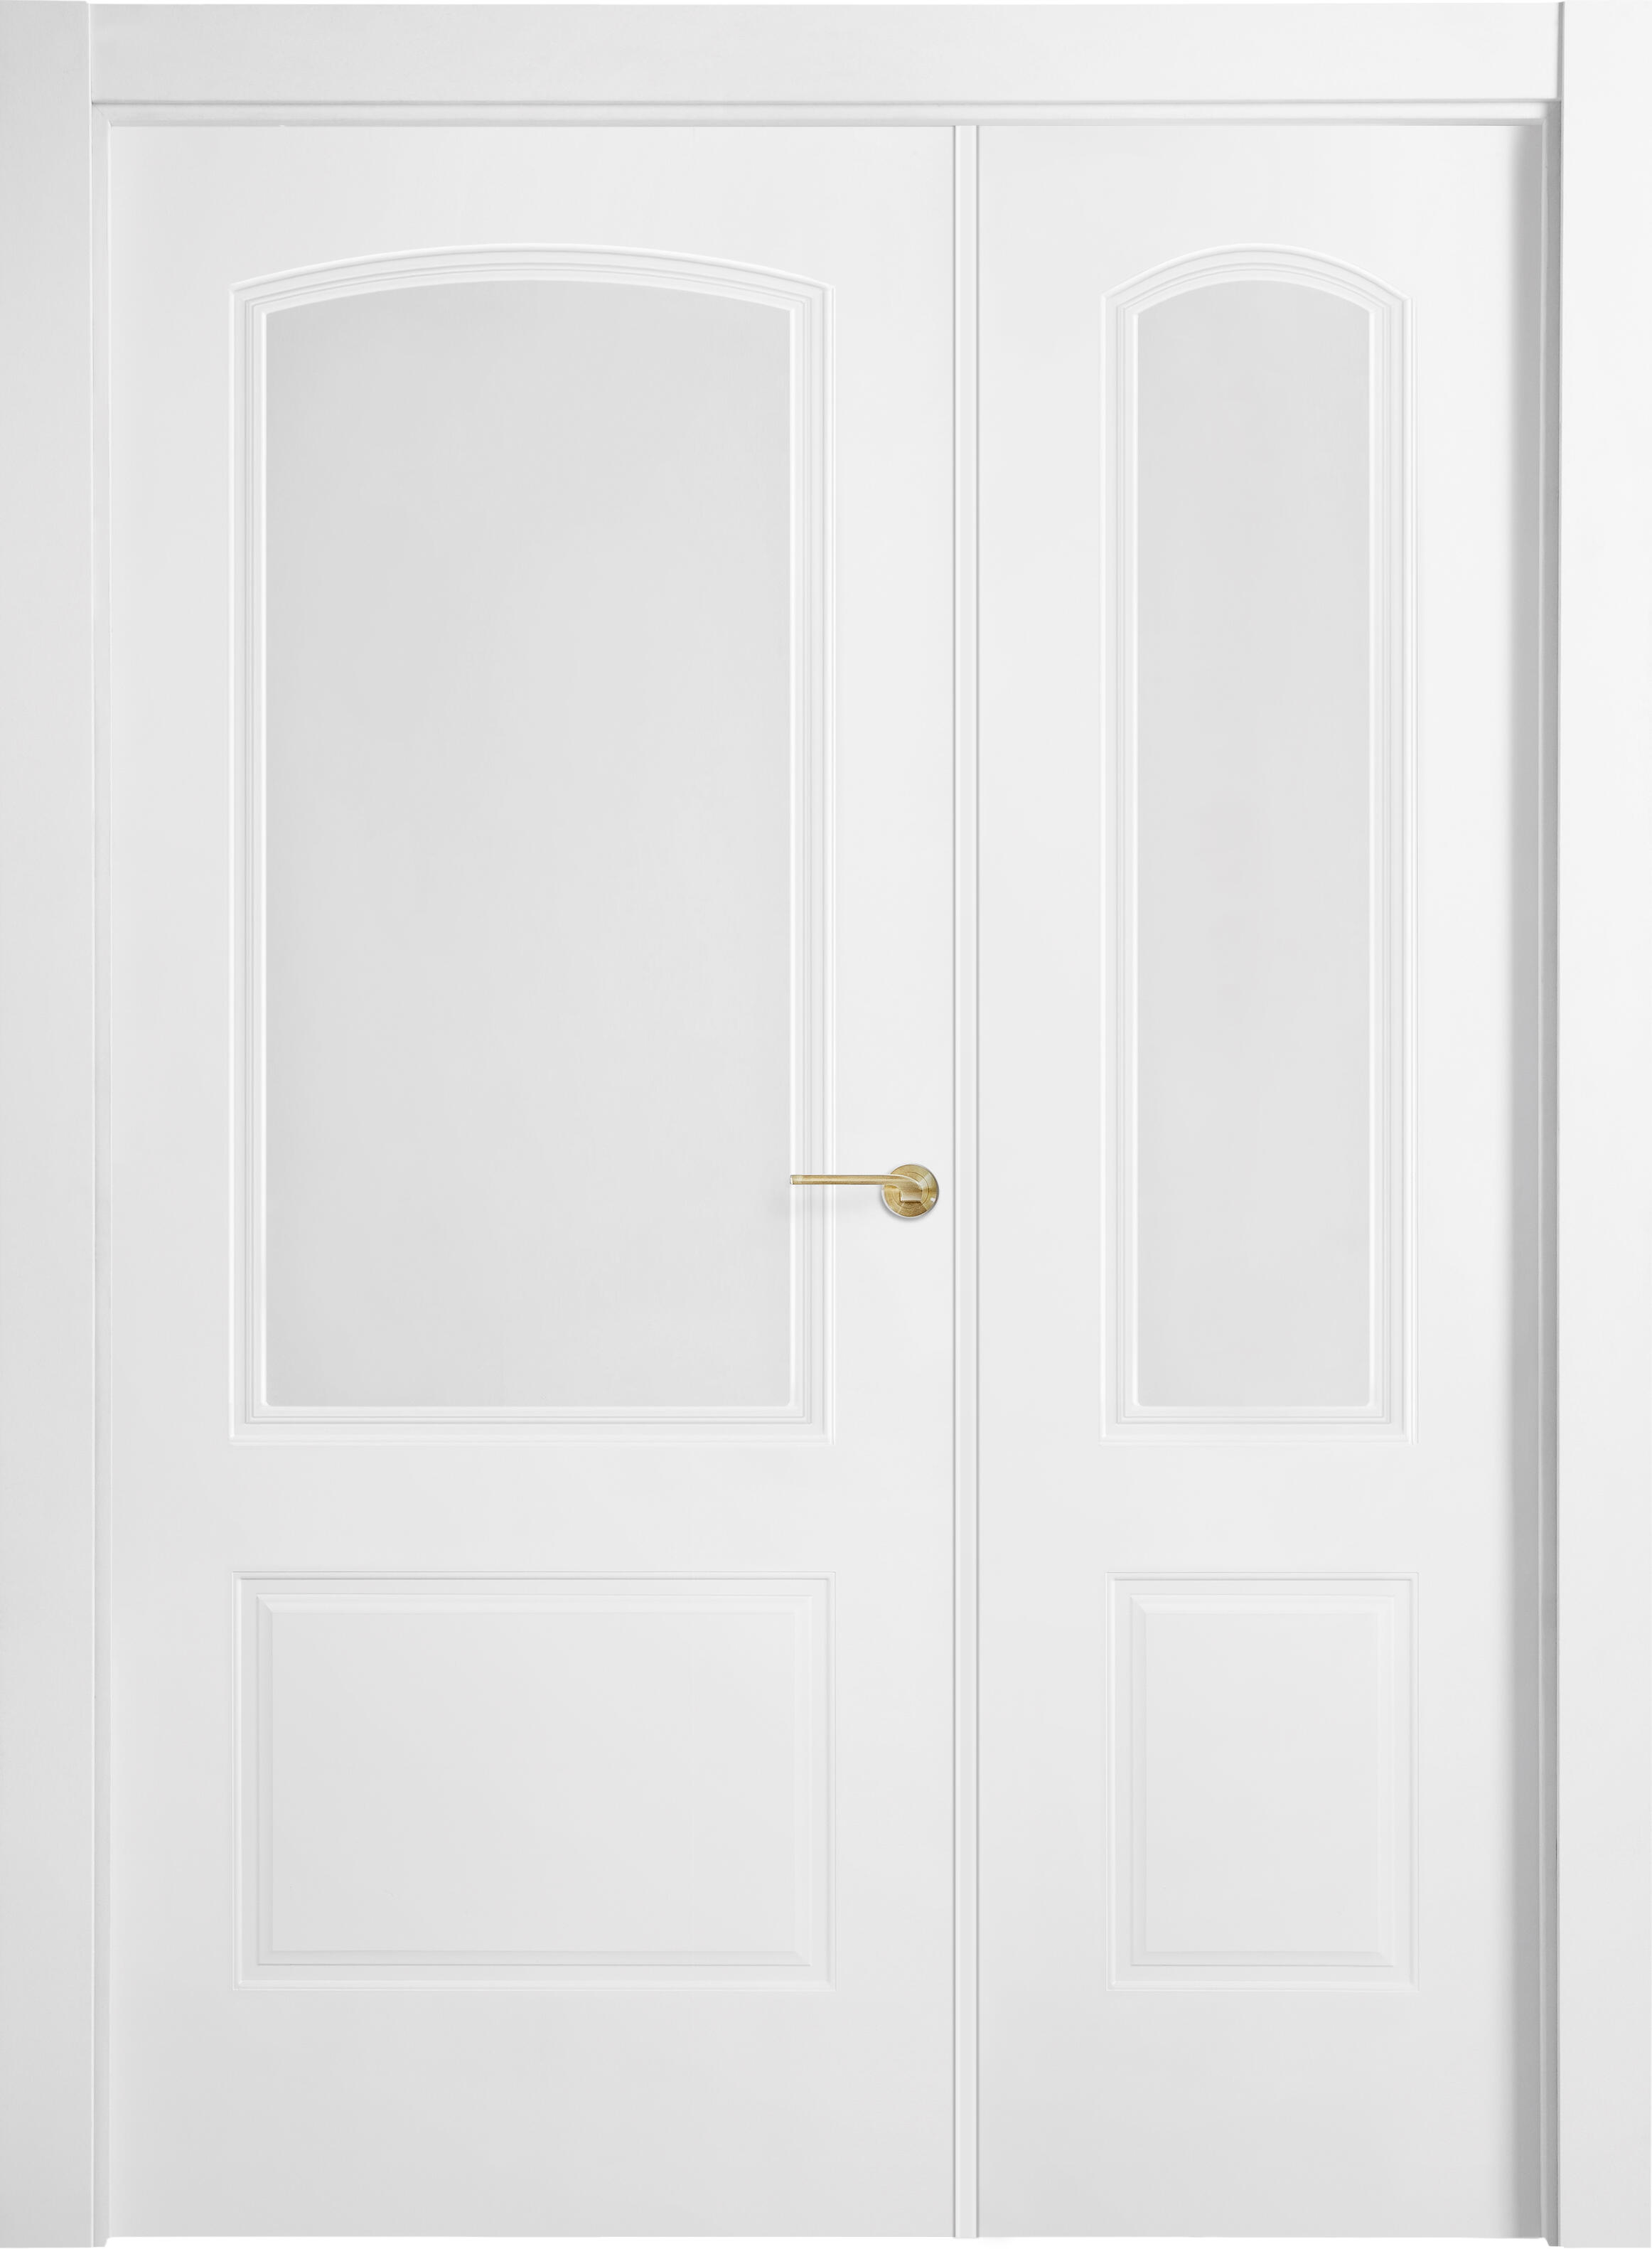 Puerta berlin plus blanco apertura izquierda con cristal 125cm